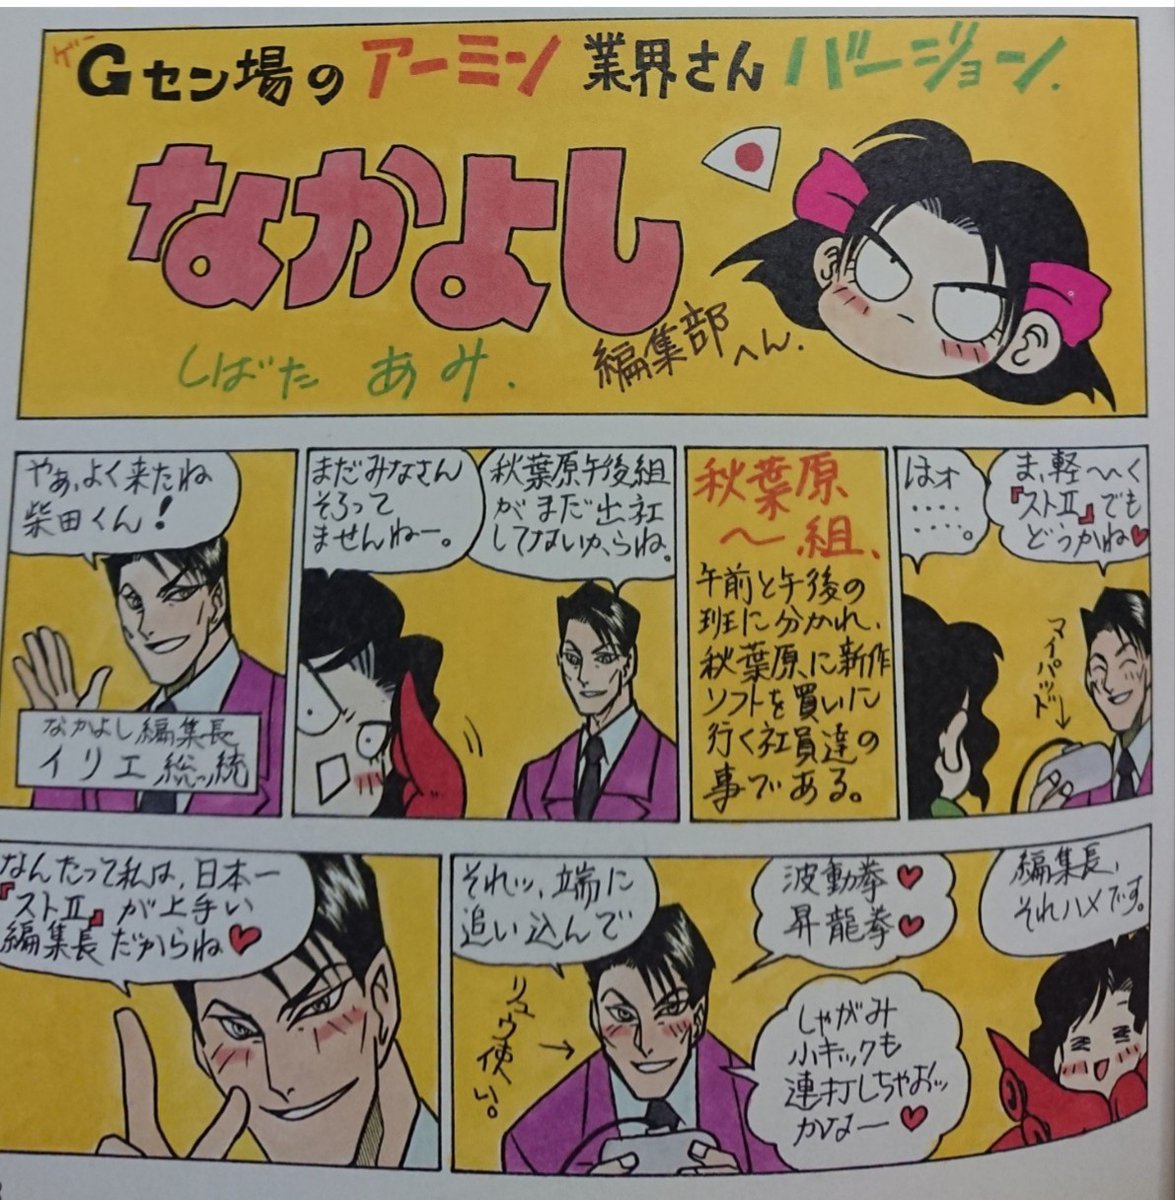 ドラクエ 柴田亜美先生と言えばやはりドラクエ4コマ パプワくん ドキばぐが筆頭とされてるが にワカのタイショーの漫画